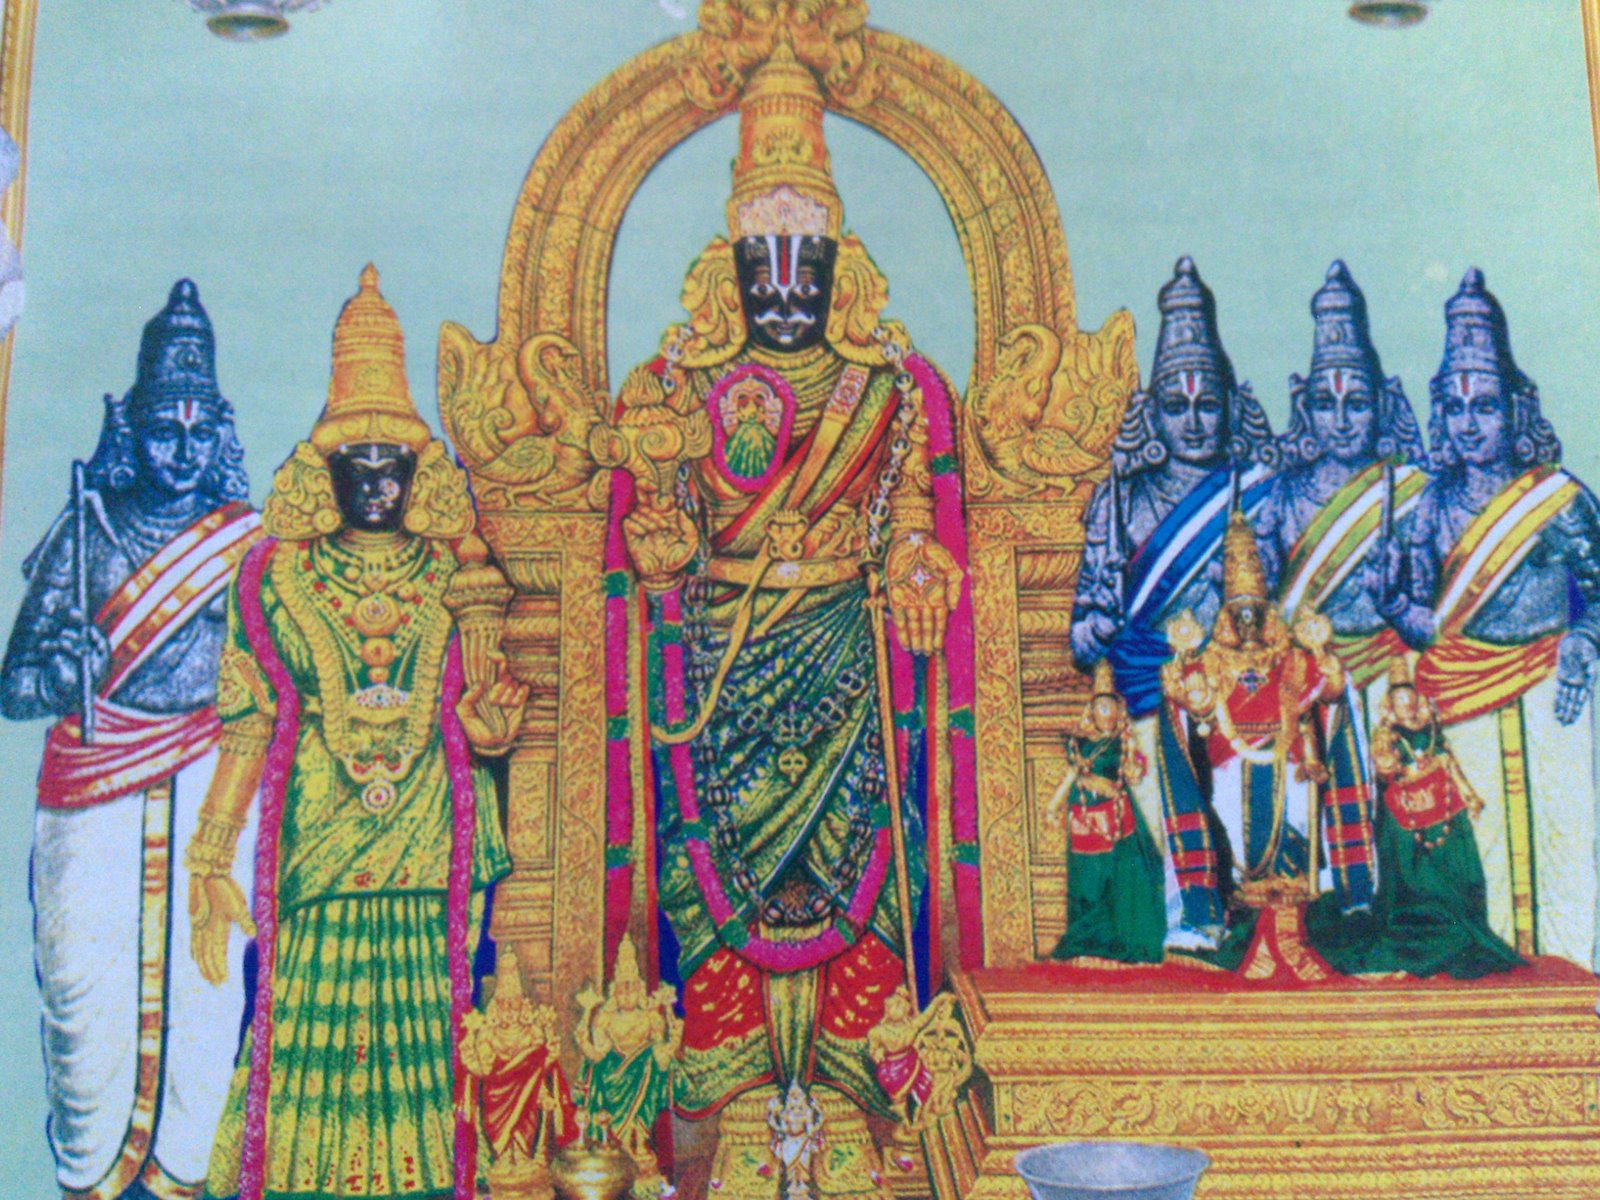 Tiruvallikeni Parthasarathy Temple